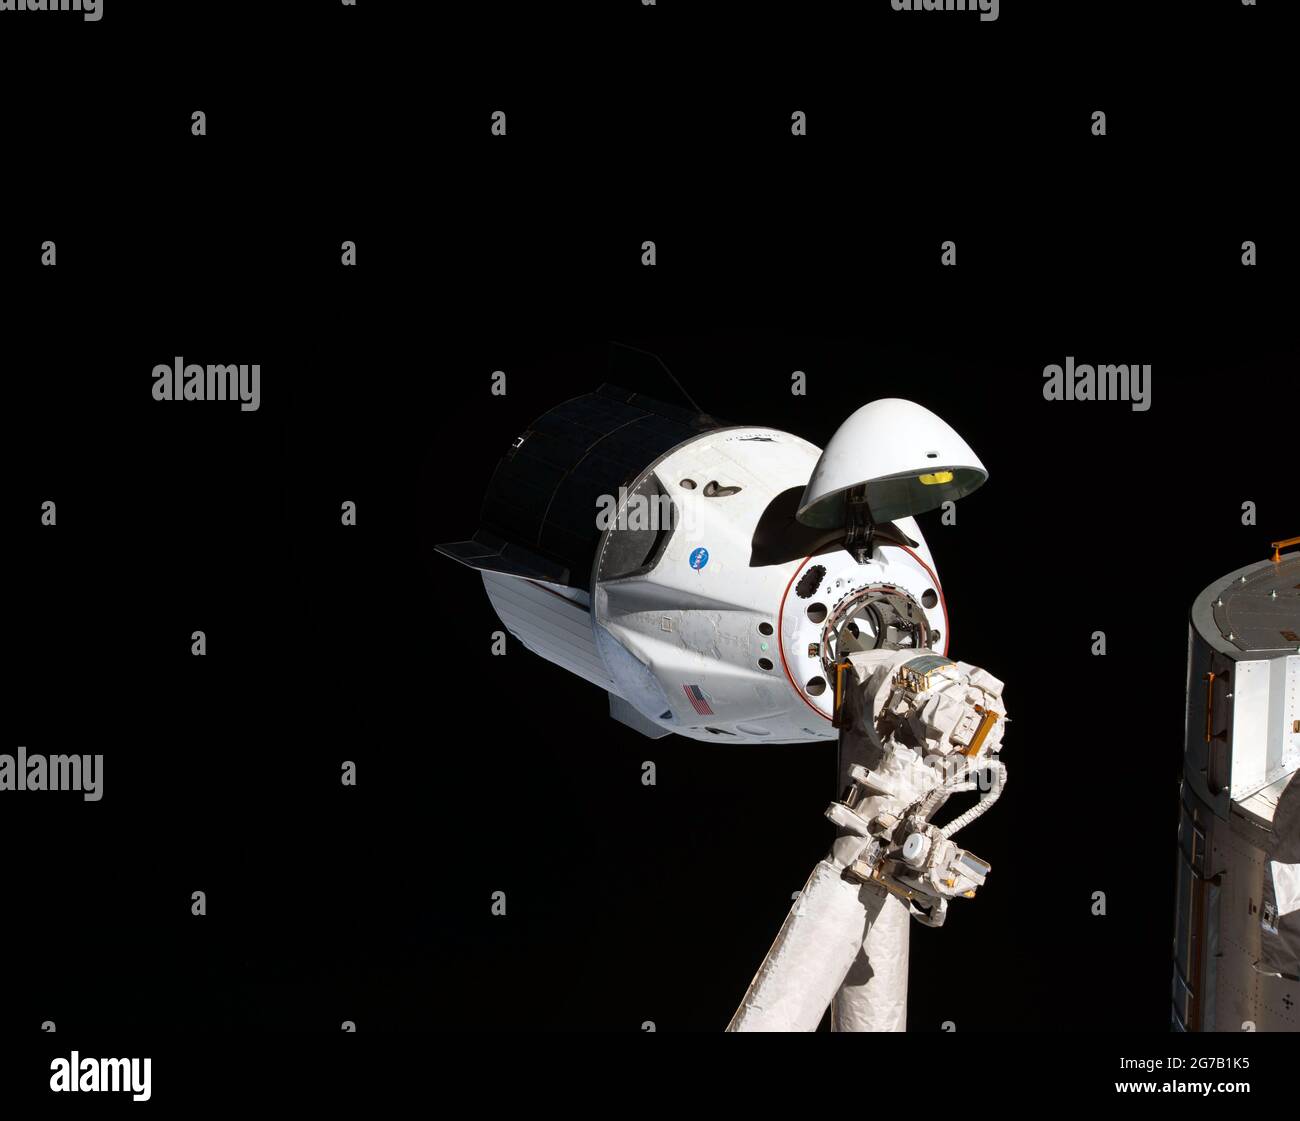 Der erste SpaceX-Drache nähert sich der ISS. Die unbemannte Raumsonde SpaceX Crew Dragon ist das erste Fahrzeug der Commercial Crew, das die Internationale Raumstation besucht. Hier abgebildet mit geöffnetem Nasenkonus, der seinen Andockmechanismus enthüllt, während er sich dem Harmony-Modul der Station nähert. Der Crew Dragon dockte nach wenigen Augenblicken automatisch an den internationalen Docking-Adapter an, der am vorderen Ende von Harmony angebracht war. März 2019. Eine einzigartige optimierte und verbesserte Version eines NASA-Bildes / Pflichtnachweis: NASA Stockfoto